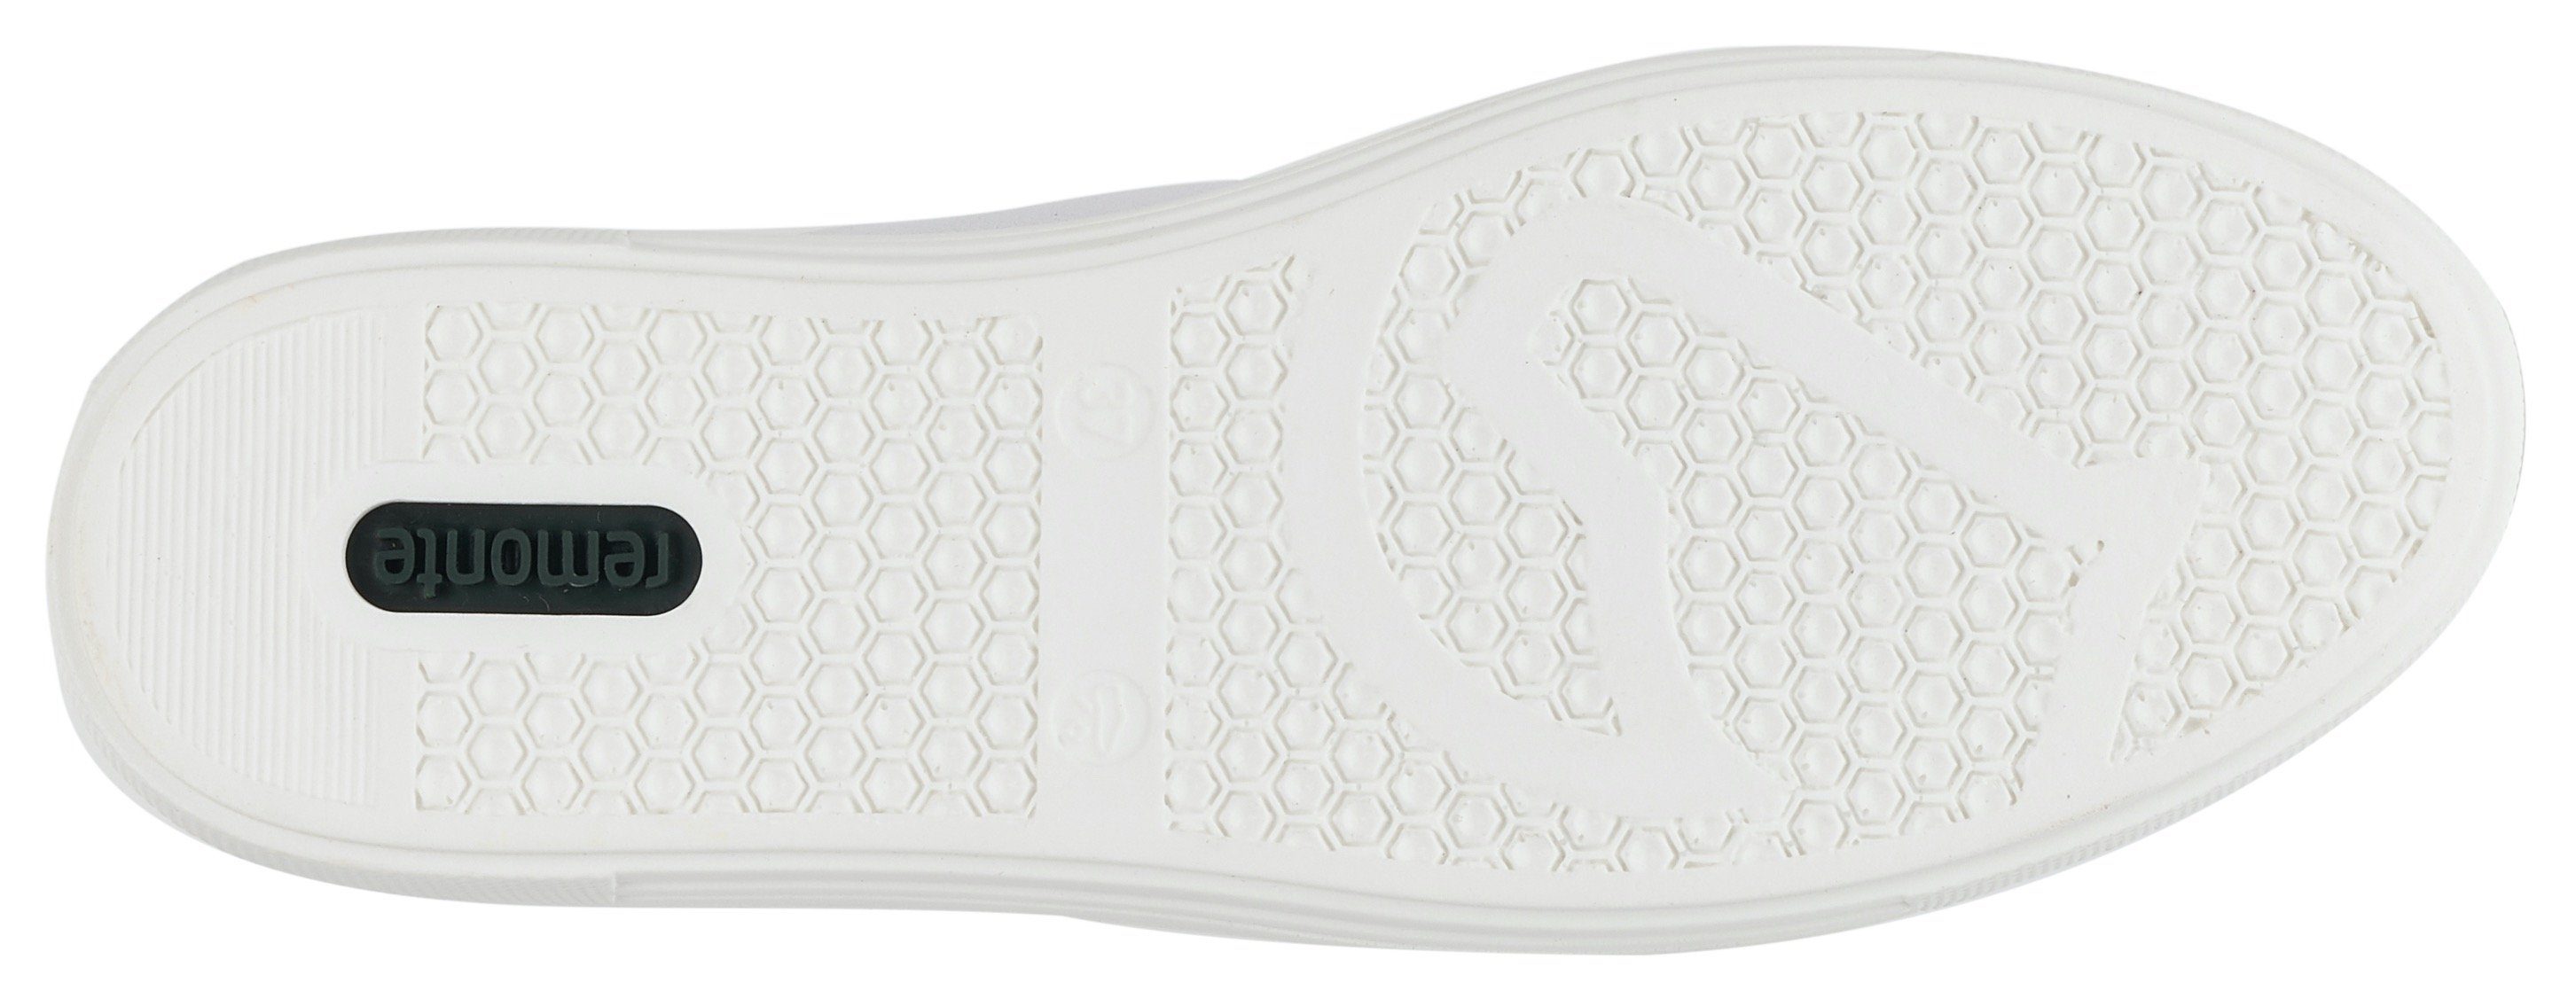 Plateausneaker weiß-kupfer herausnehmbarem Remonte Fußbett Soft-Foam mit